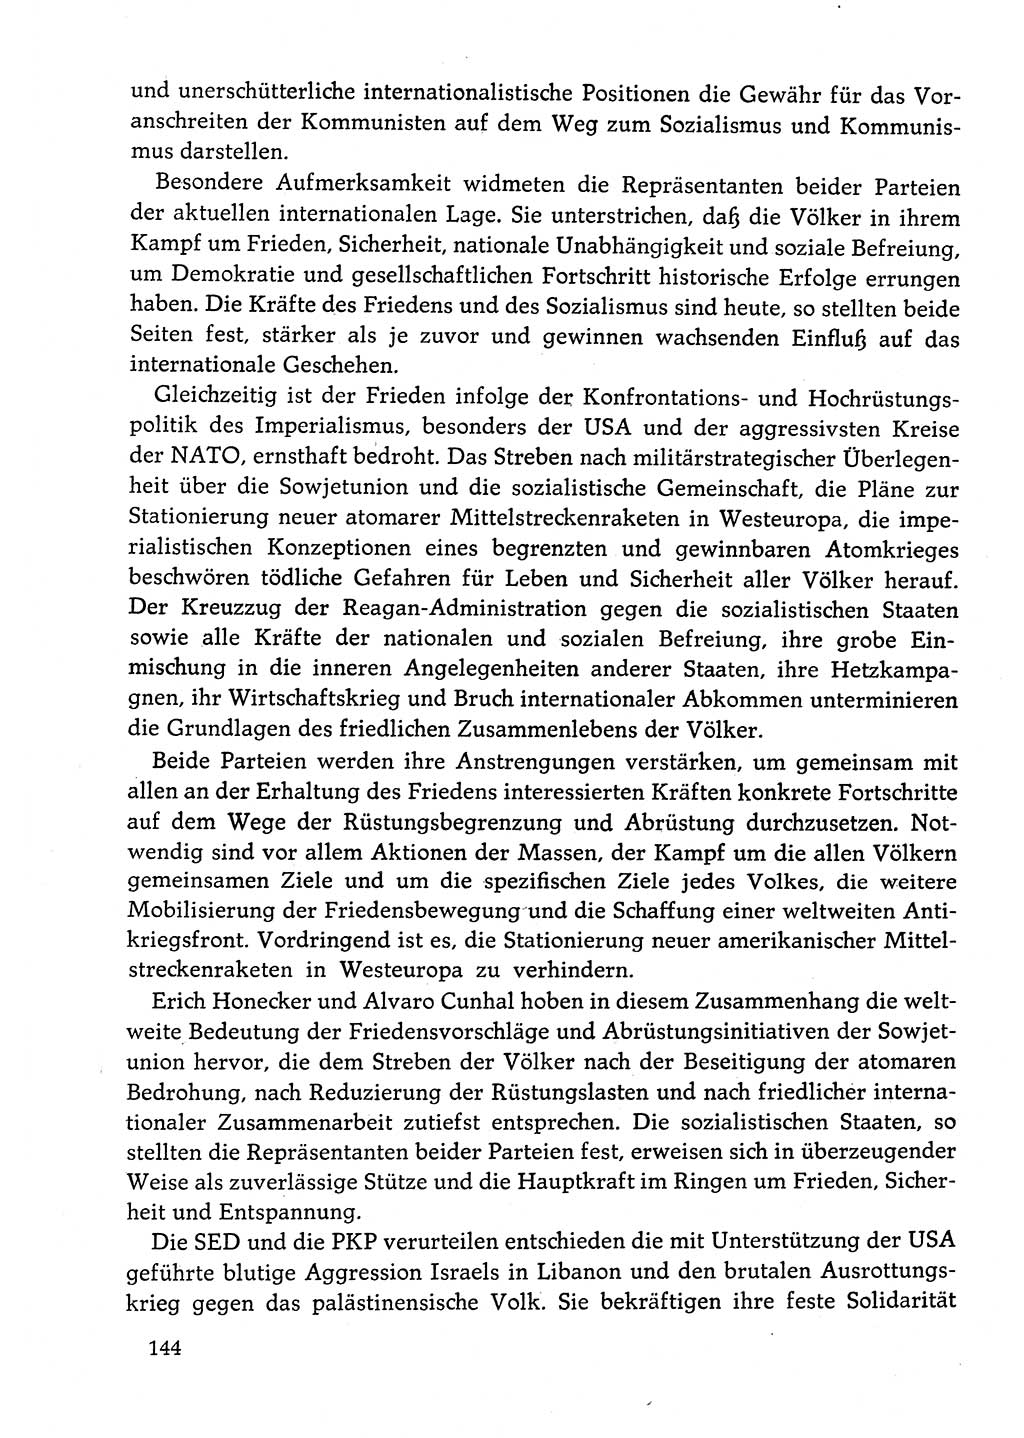 Dokumente der Sozialistischen Einheitspartei Deutschlands (SED) [Deutsche Demokratische Republik (DDR)] 1982-1983, Seite 144 (Dok. SED DDR 1982-1983, S. 144)